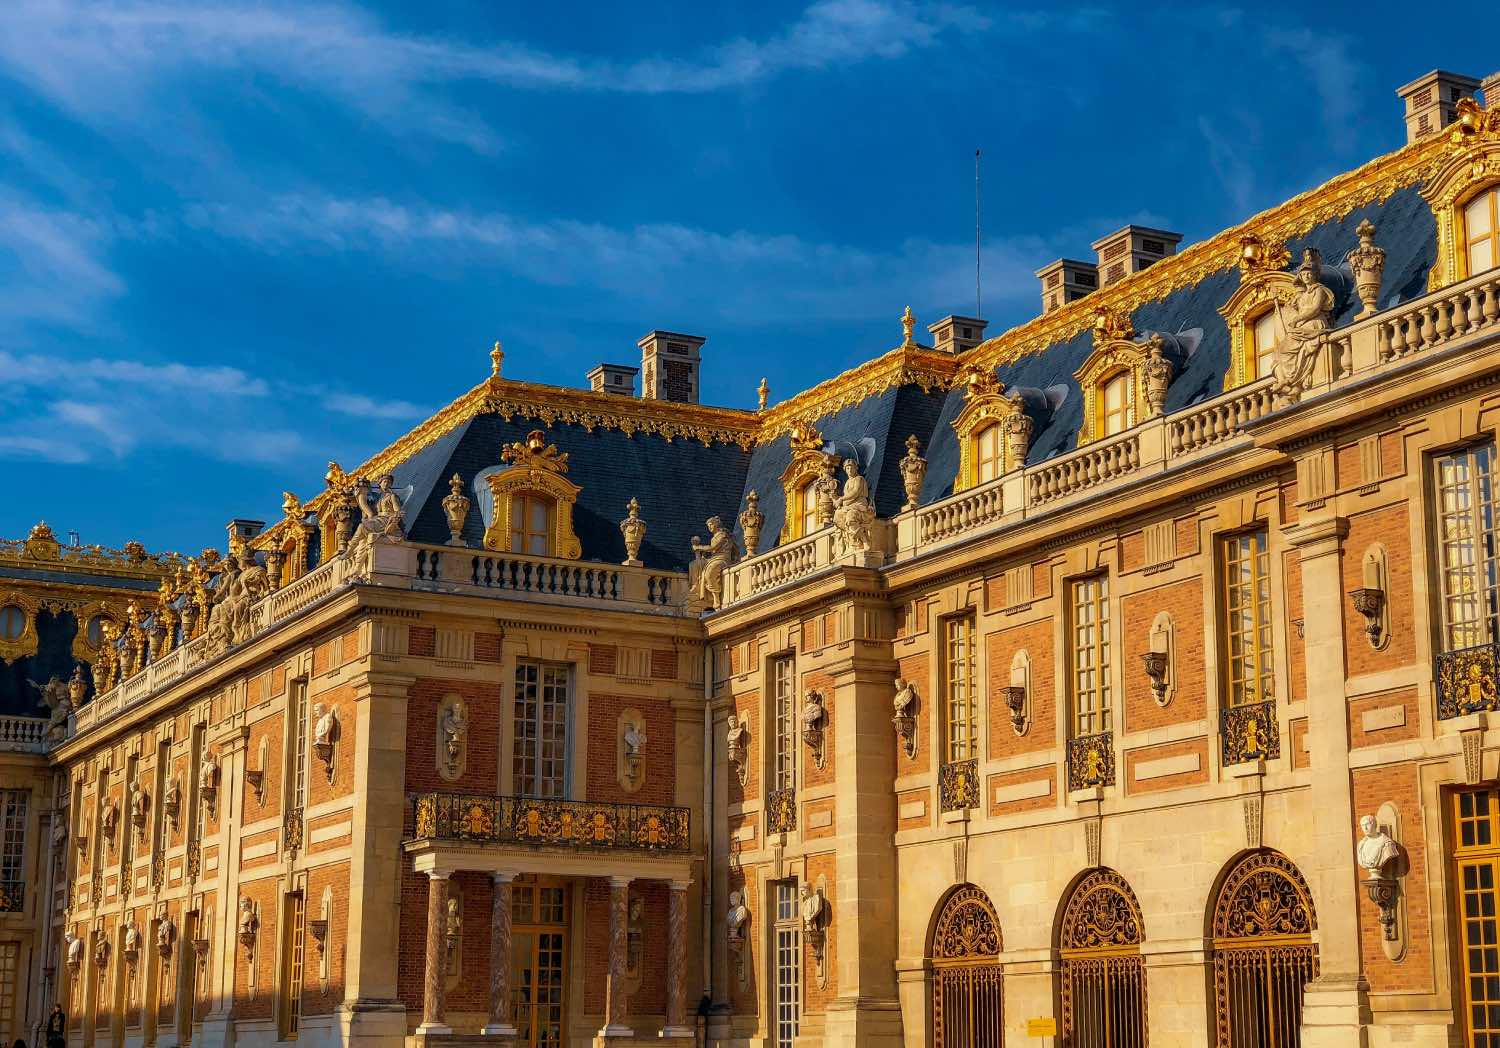 arquitectura barroca francesa, palacio de versailles con esculturas y oro